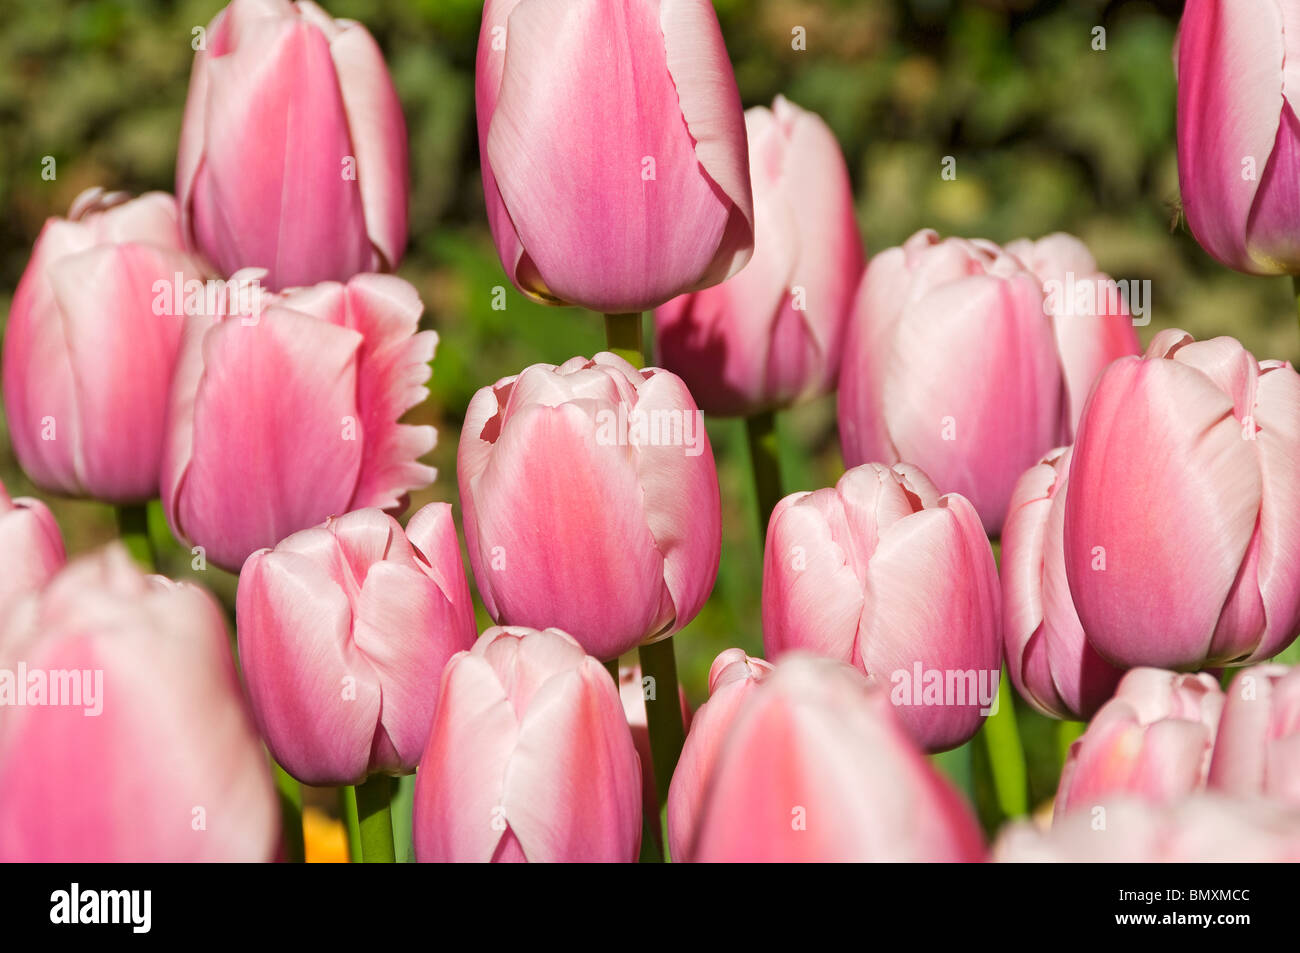 Primo piano di tulipano rosa tulipani fiori fiore fioritura fioritura fioritura fioritura fioritura in giardino in primavera Inghilterra Regno Unito Gran Bretagna Foto Stock